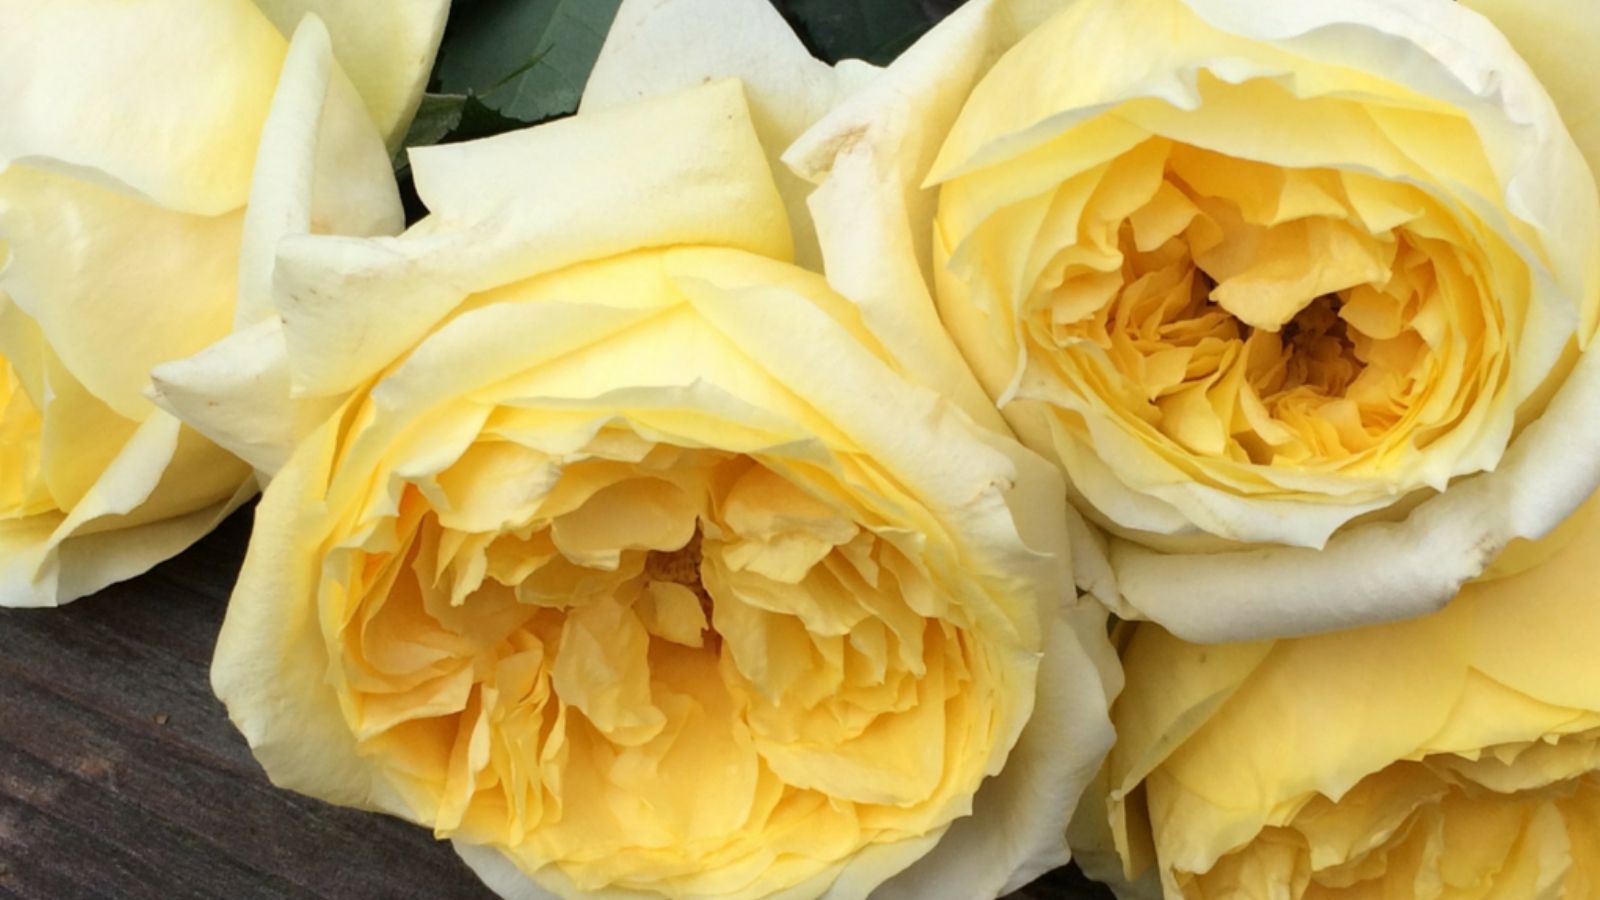 rose-toulouse-lautrec-cut-flowers-on-thursd-on-thursd-facebook